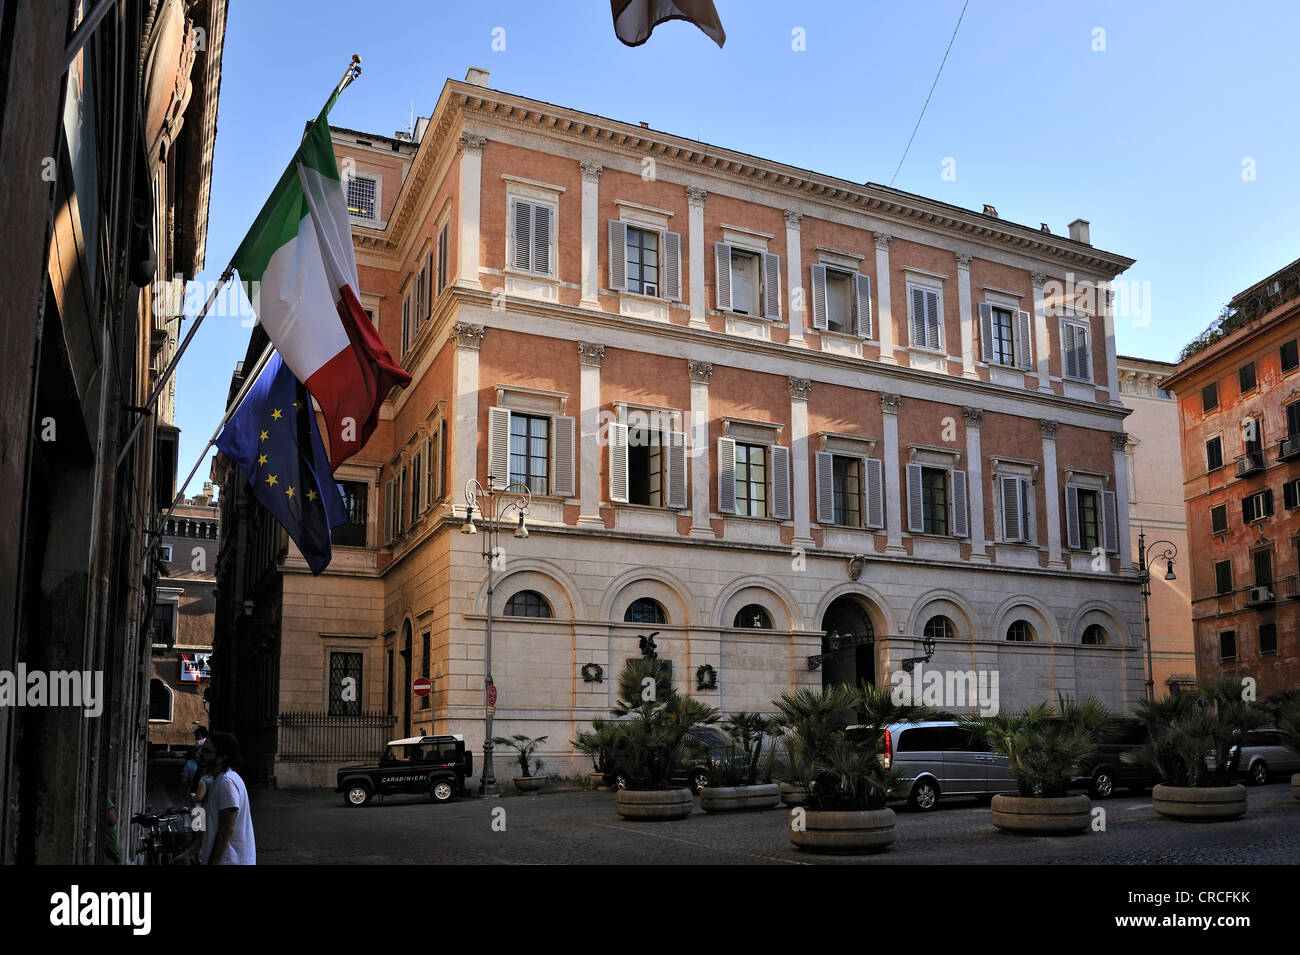 Palazzo Grazioli, private palace of the Italian Prime Minister Silvio Berlusconi, Piazza Grazioli, Rome, Lazio, Italy, Europe Stock Photo